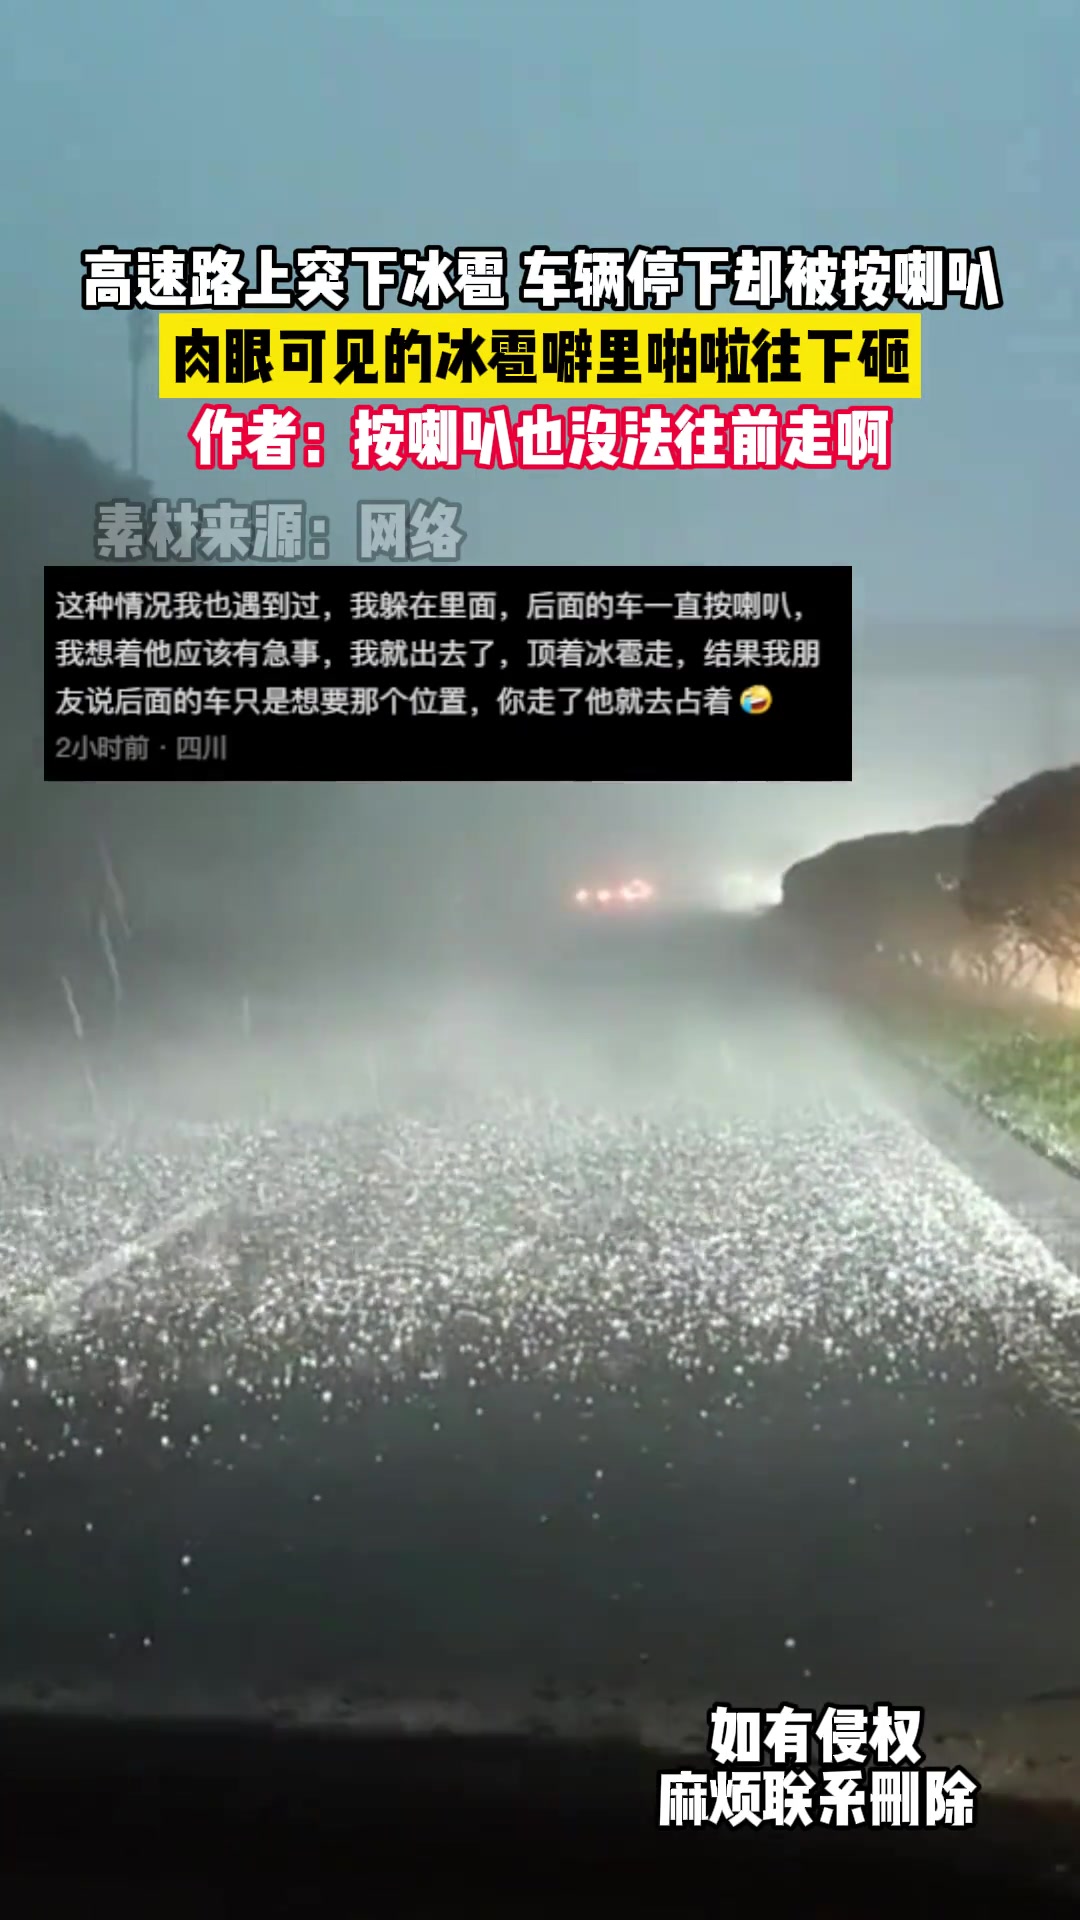 重庆多地遭遇暴雨冰雹强对流天气 部分高速收费站管制-今日重庆-华龙网